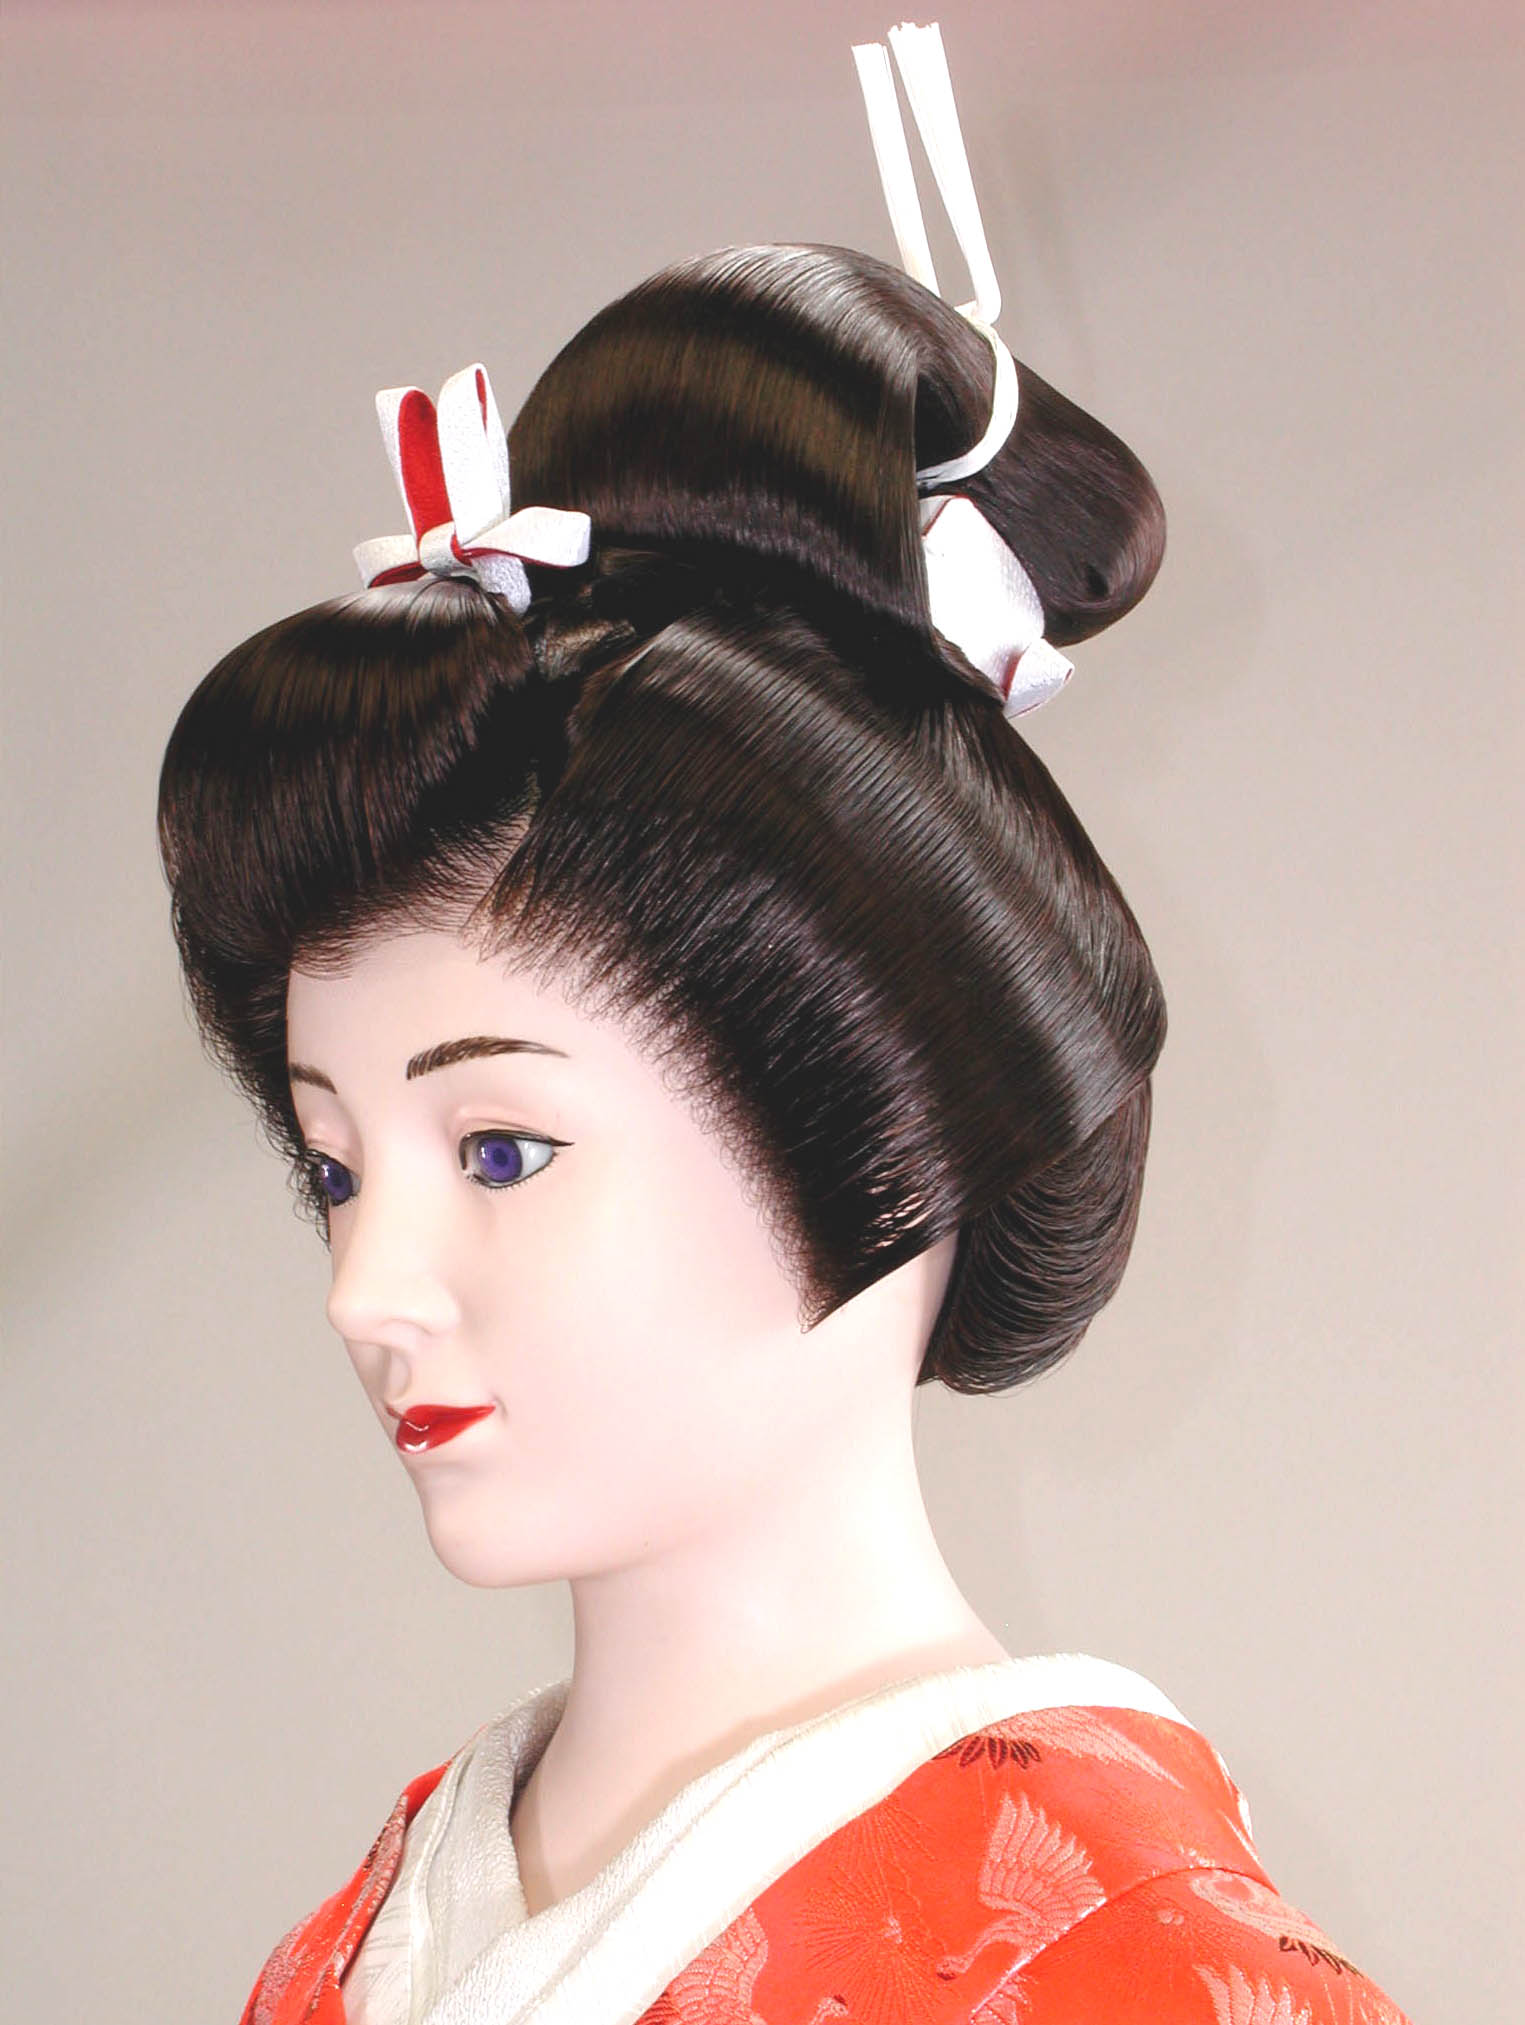 越境ECさくらモール / 日本の伝統的な髪型「文金高島田」のかつら